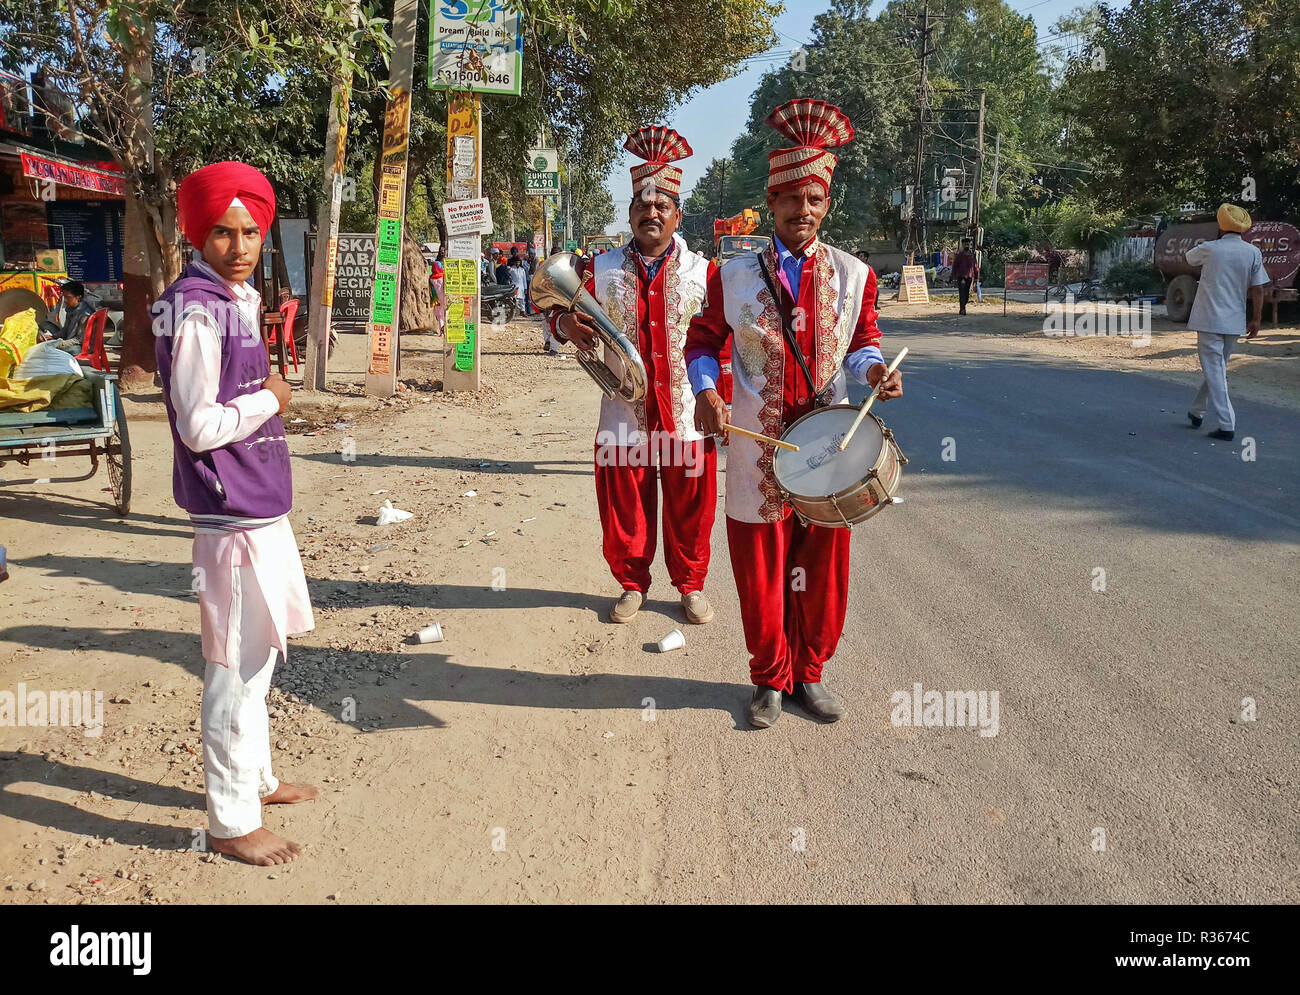 Les musiciens sont vus sikh qui participent au cours de la Procession Sainte (Keertan Nagar) à Chandigarh. Une procession religieuse a eu lieu dans la région de l'anniversaire de la naissance de Guru Nanak Dev, le fondateur de la foi sikh, qui sera célébré dans tout le pays le 23 novembre. Banque D'Images